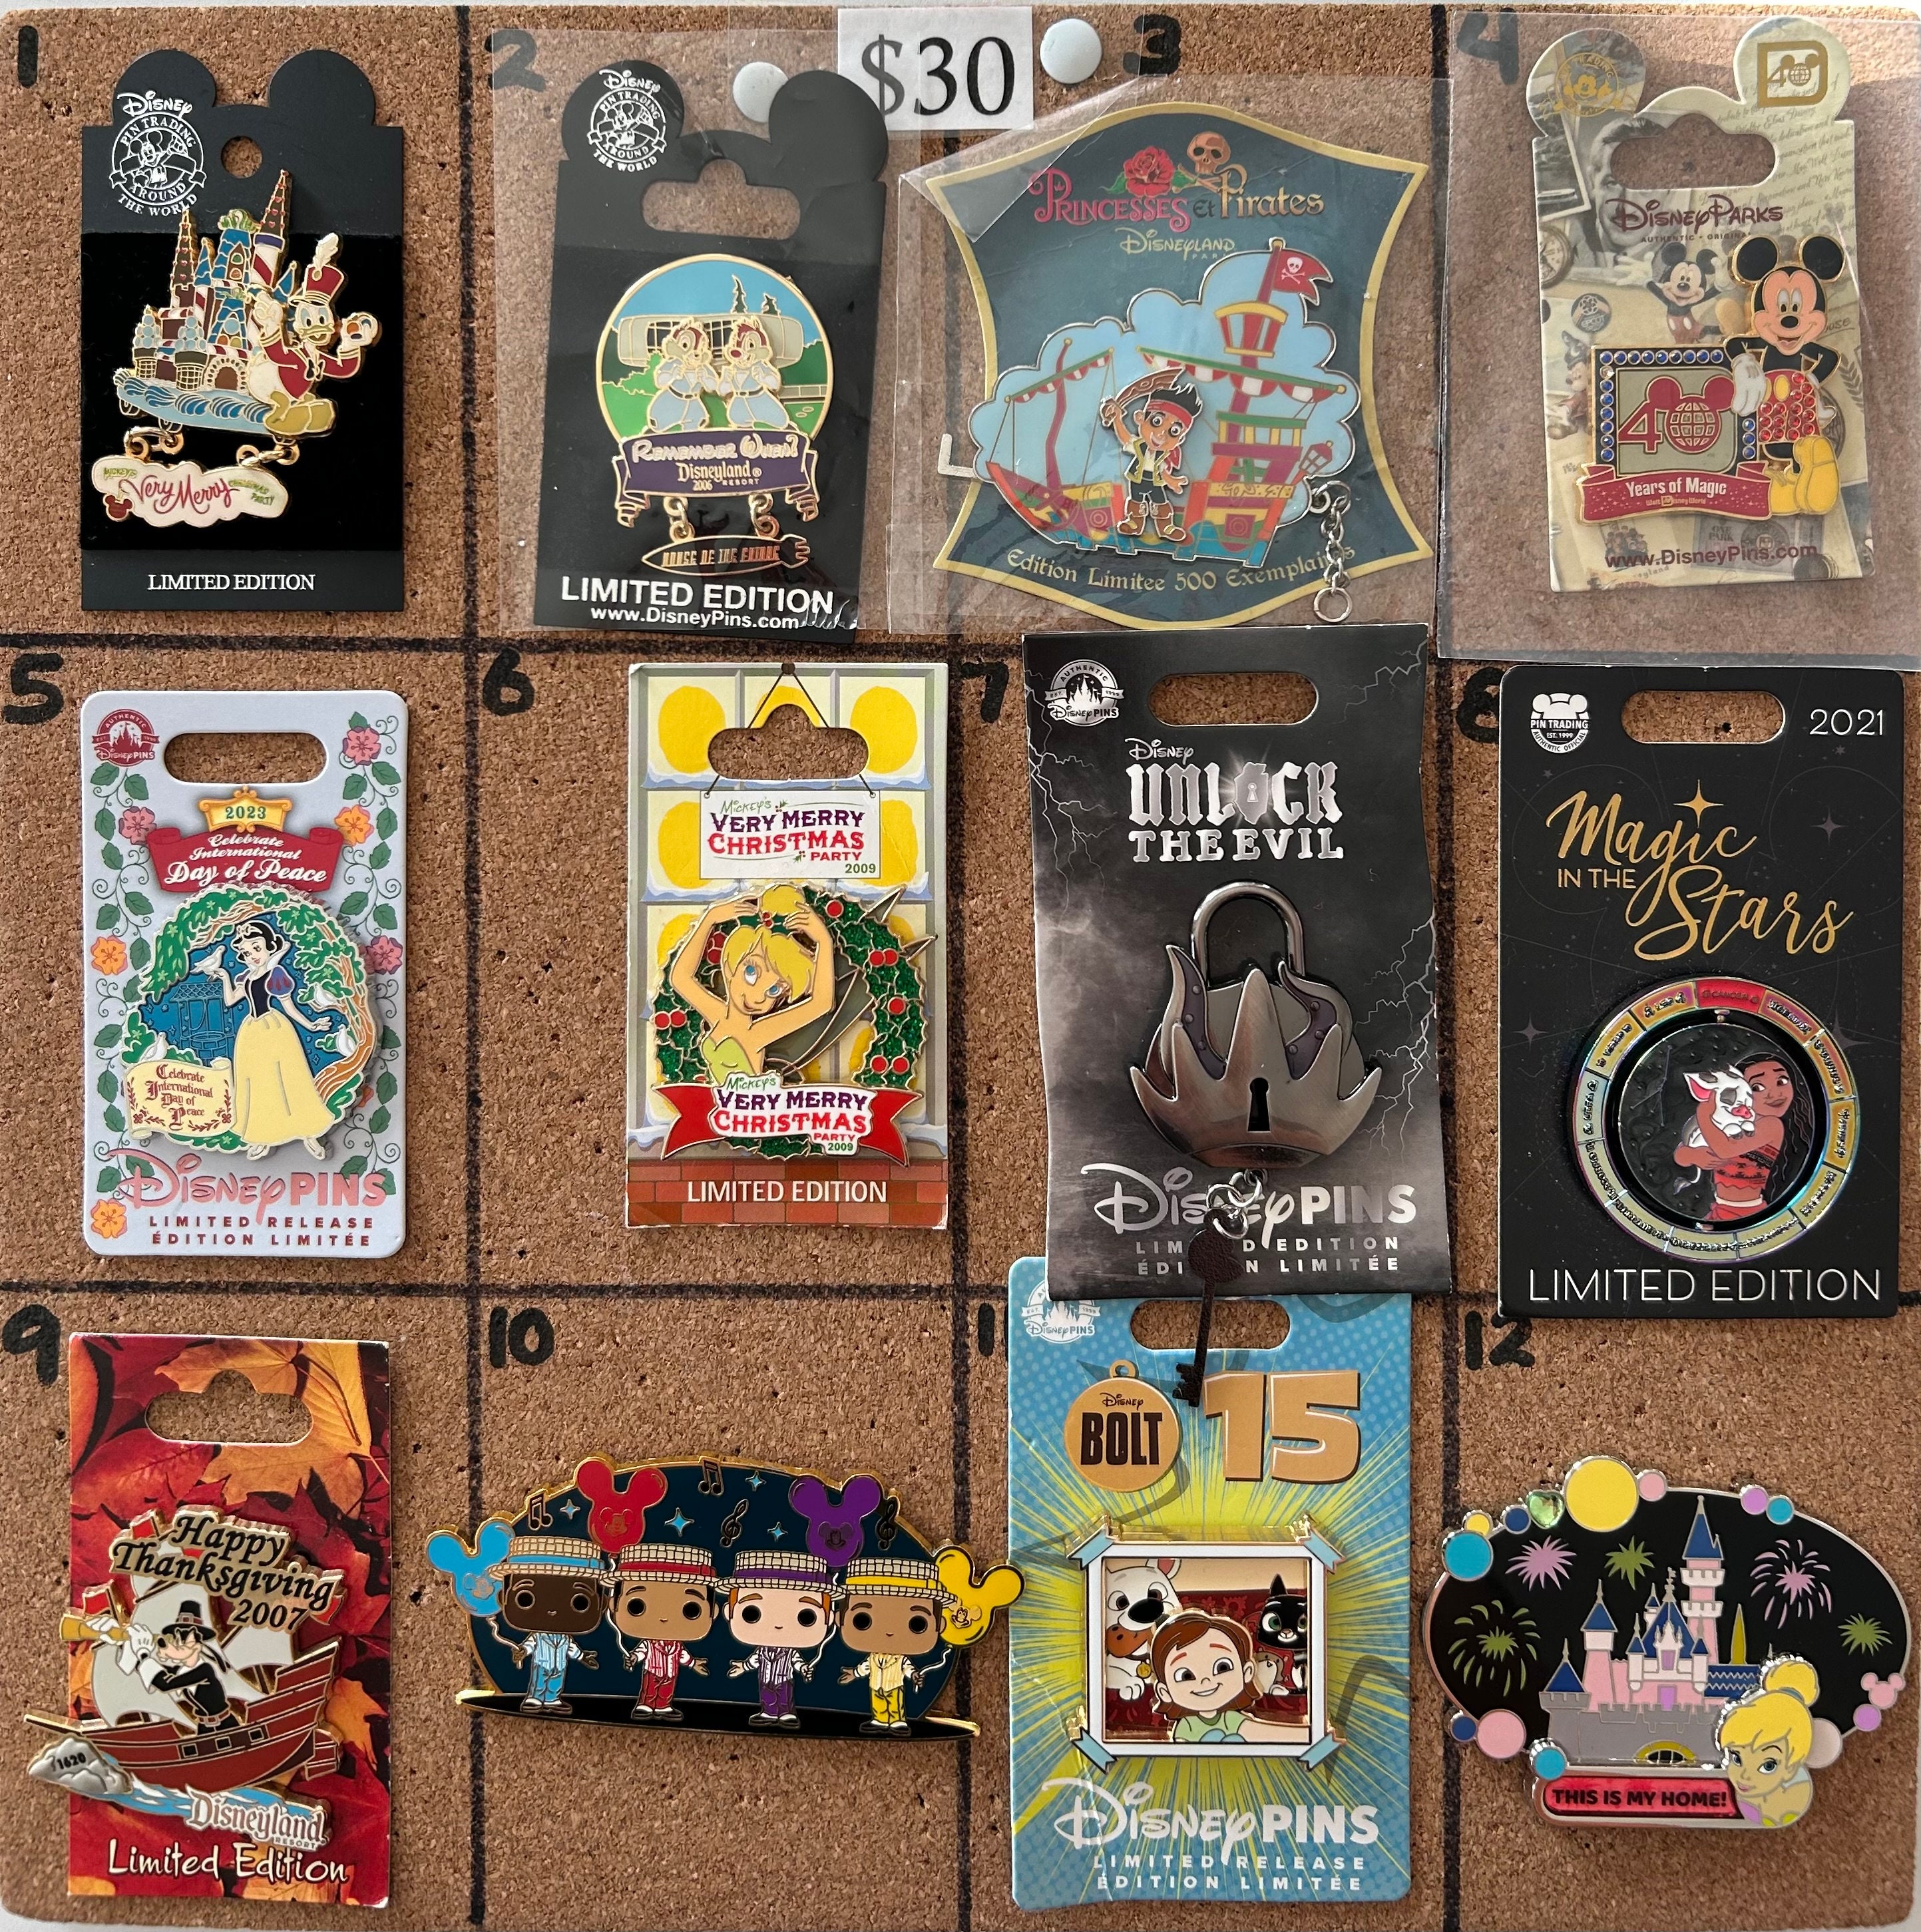 Walt Disney World Disneyland Pin Trading Lanyard Various Styles to